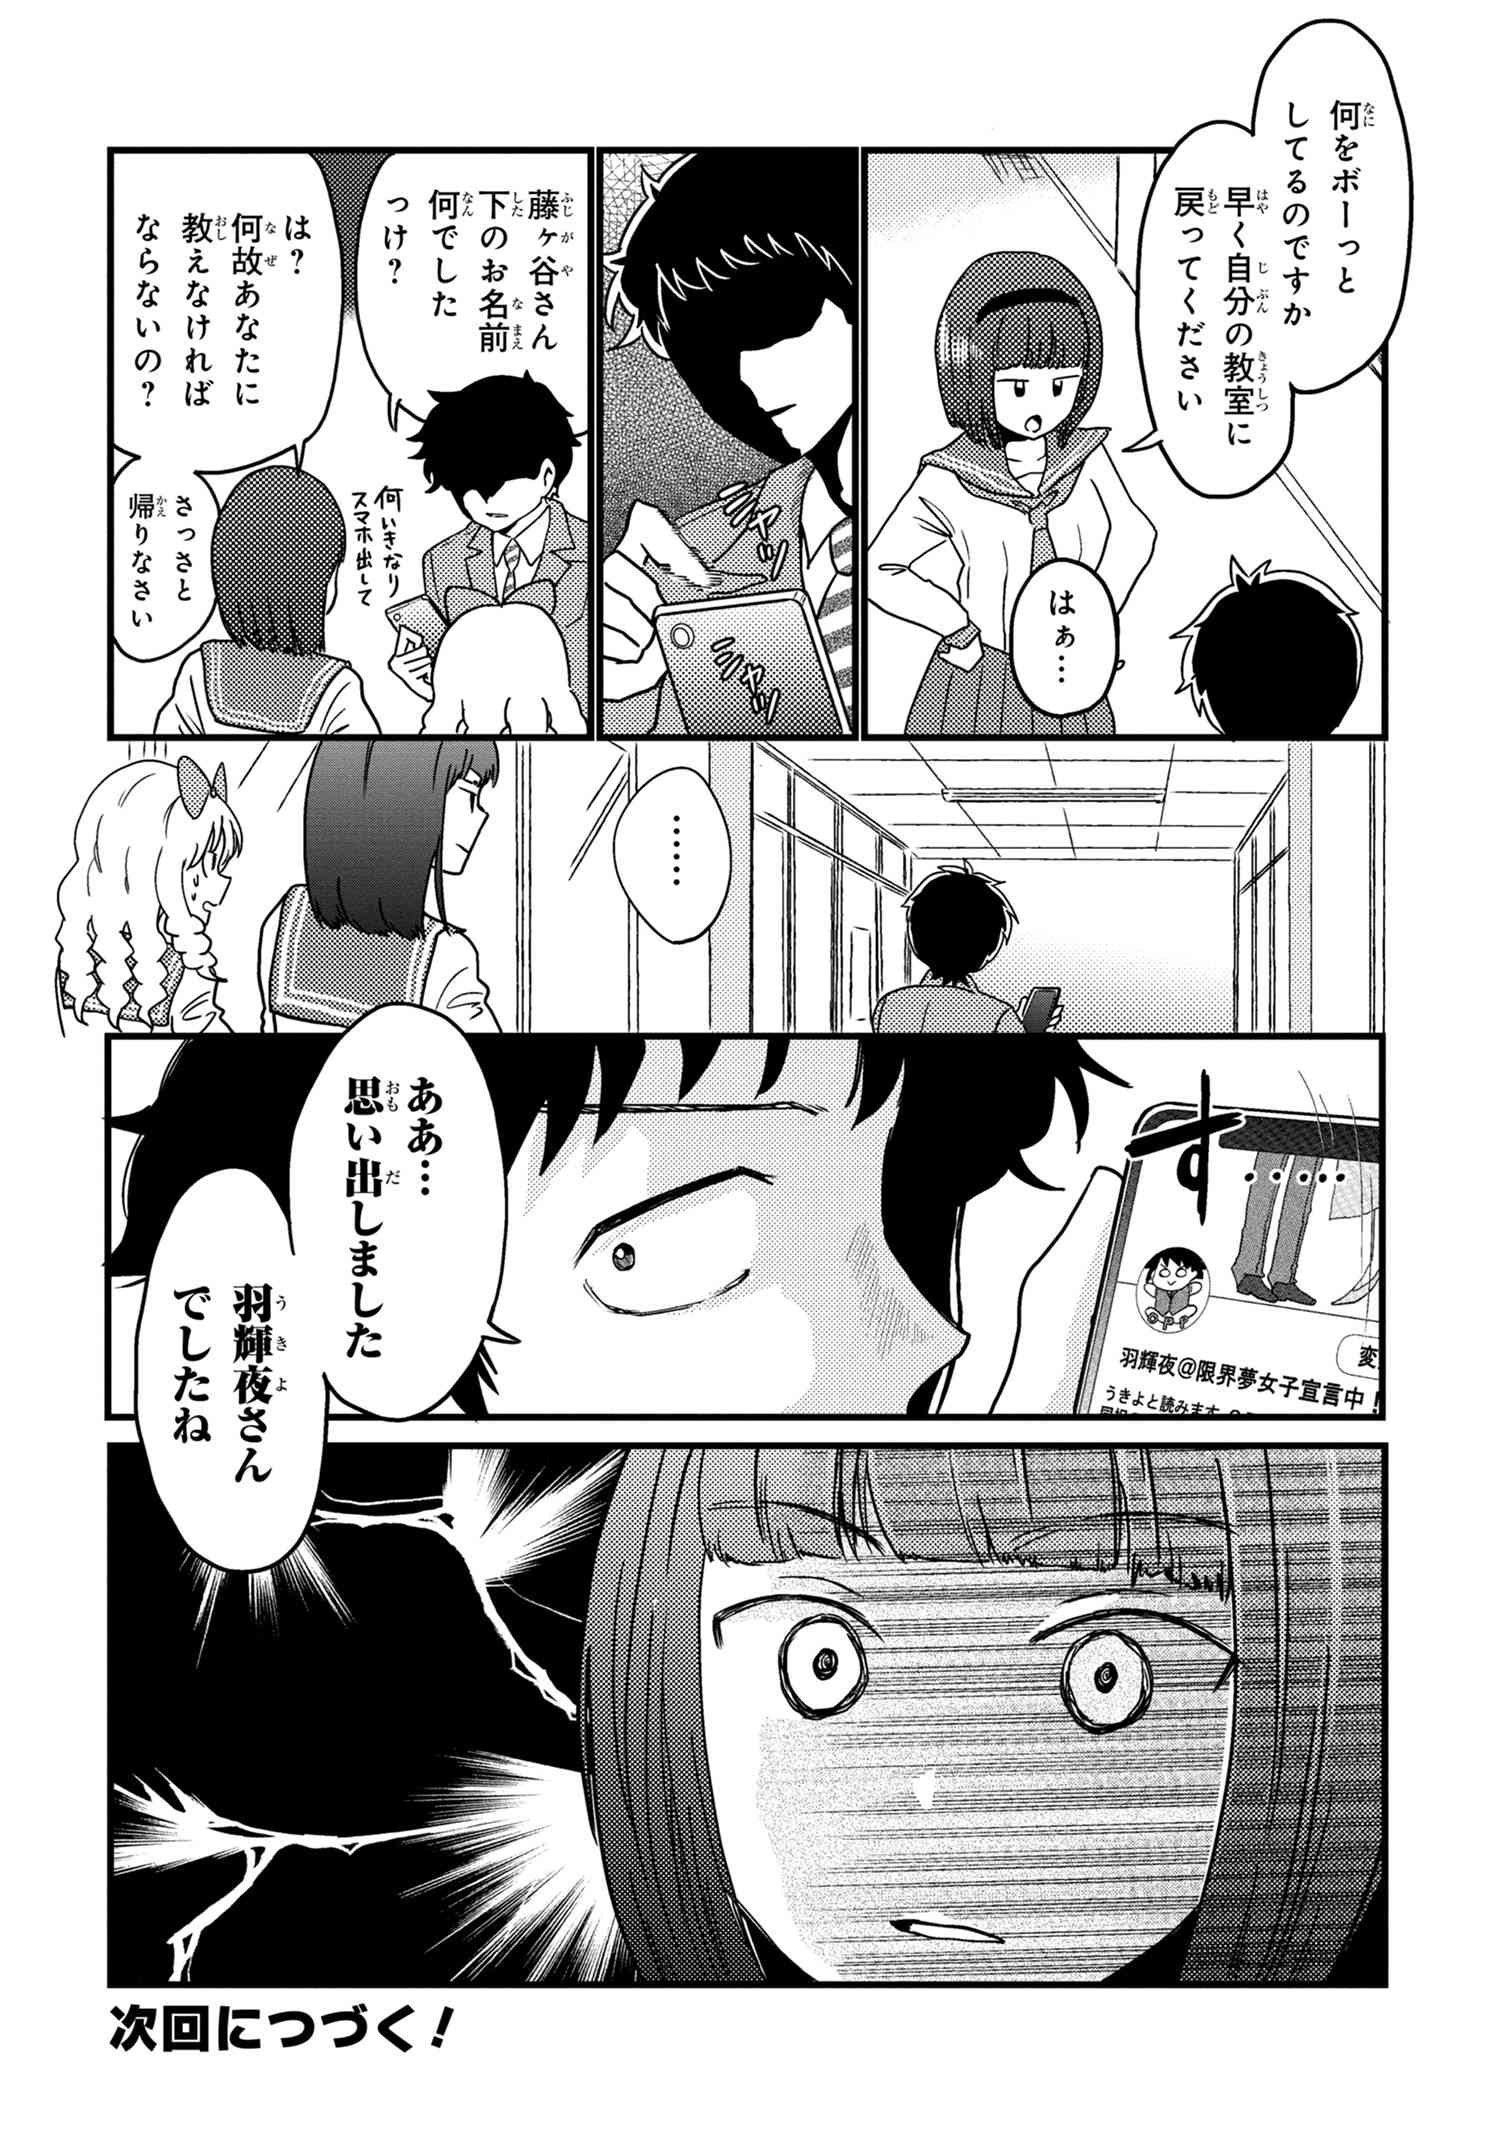 Houjou Urara no renai shousetsu o kaki nasai! - Chapter 11 - Page 6